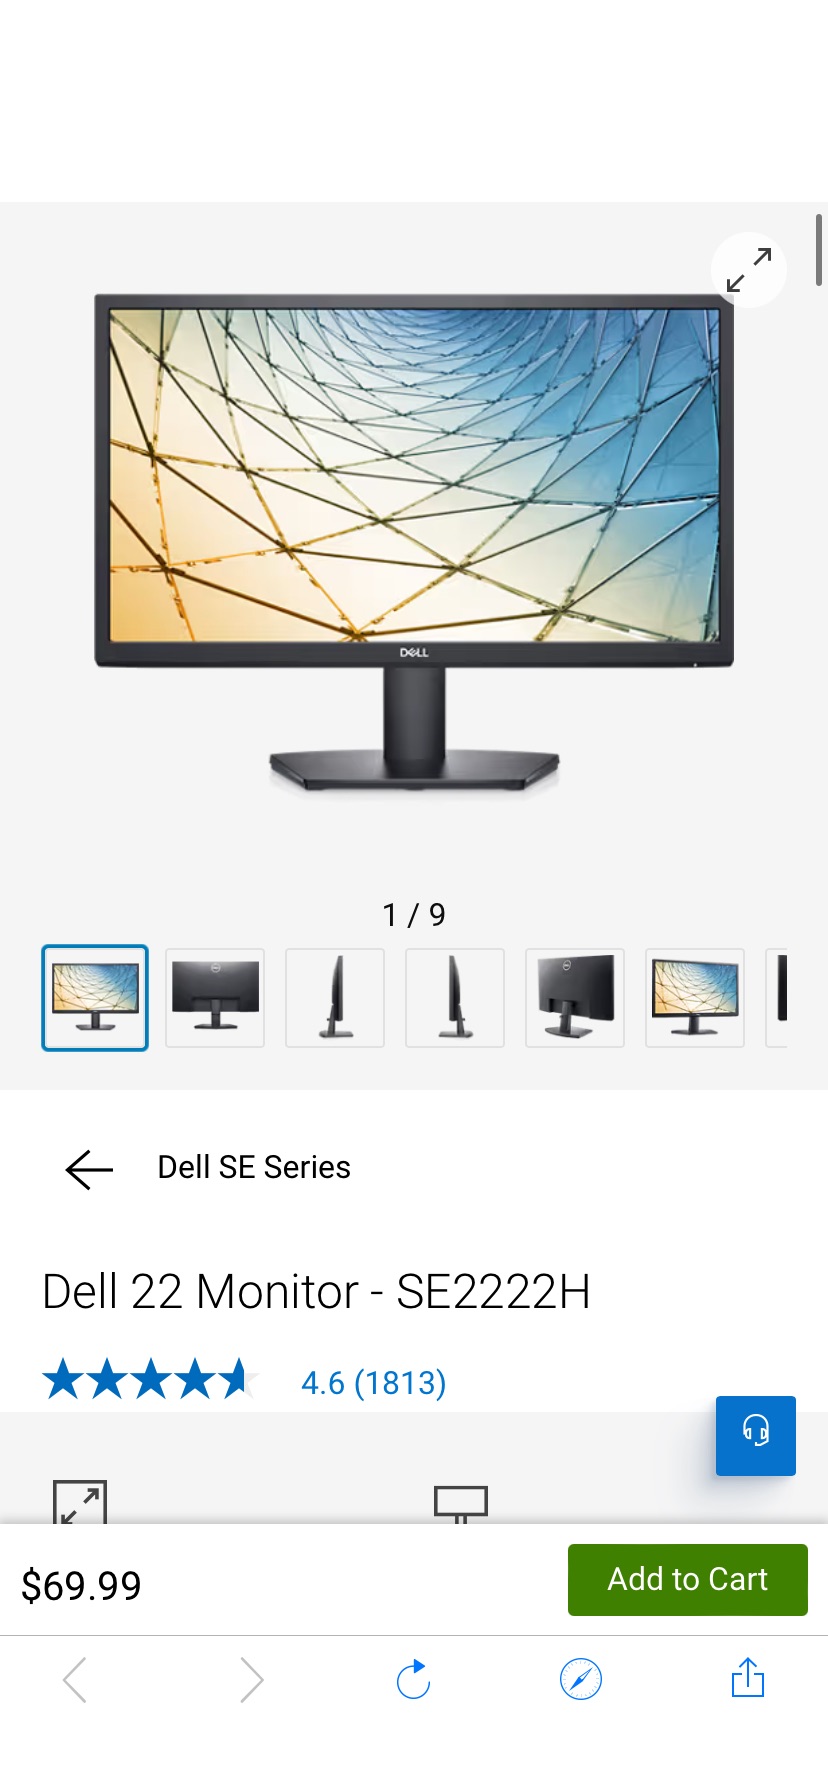 Dell 22 FHD Computer Monitor - SE2222H | Dell USA